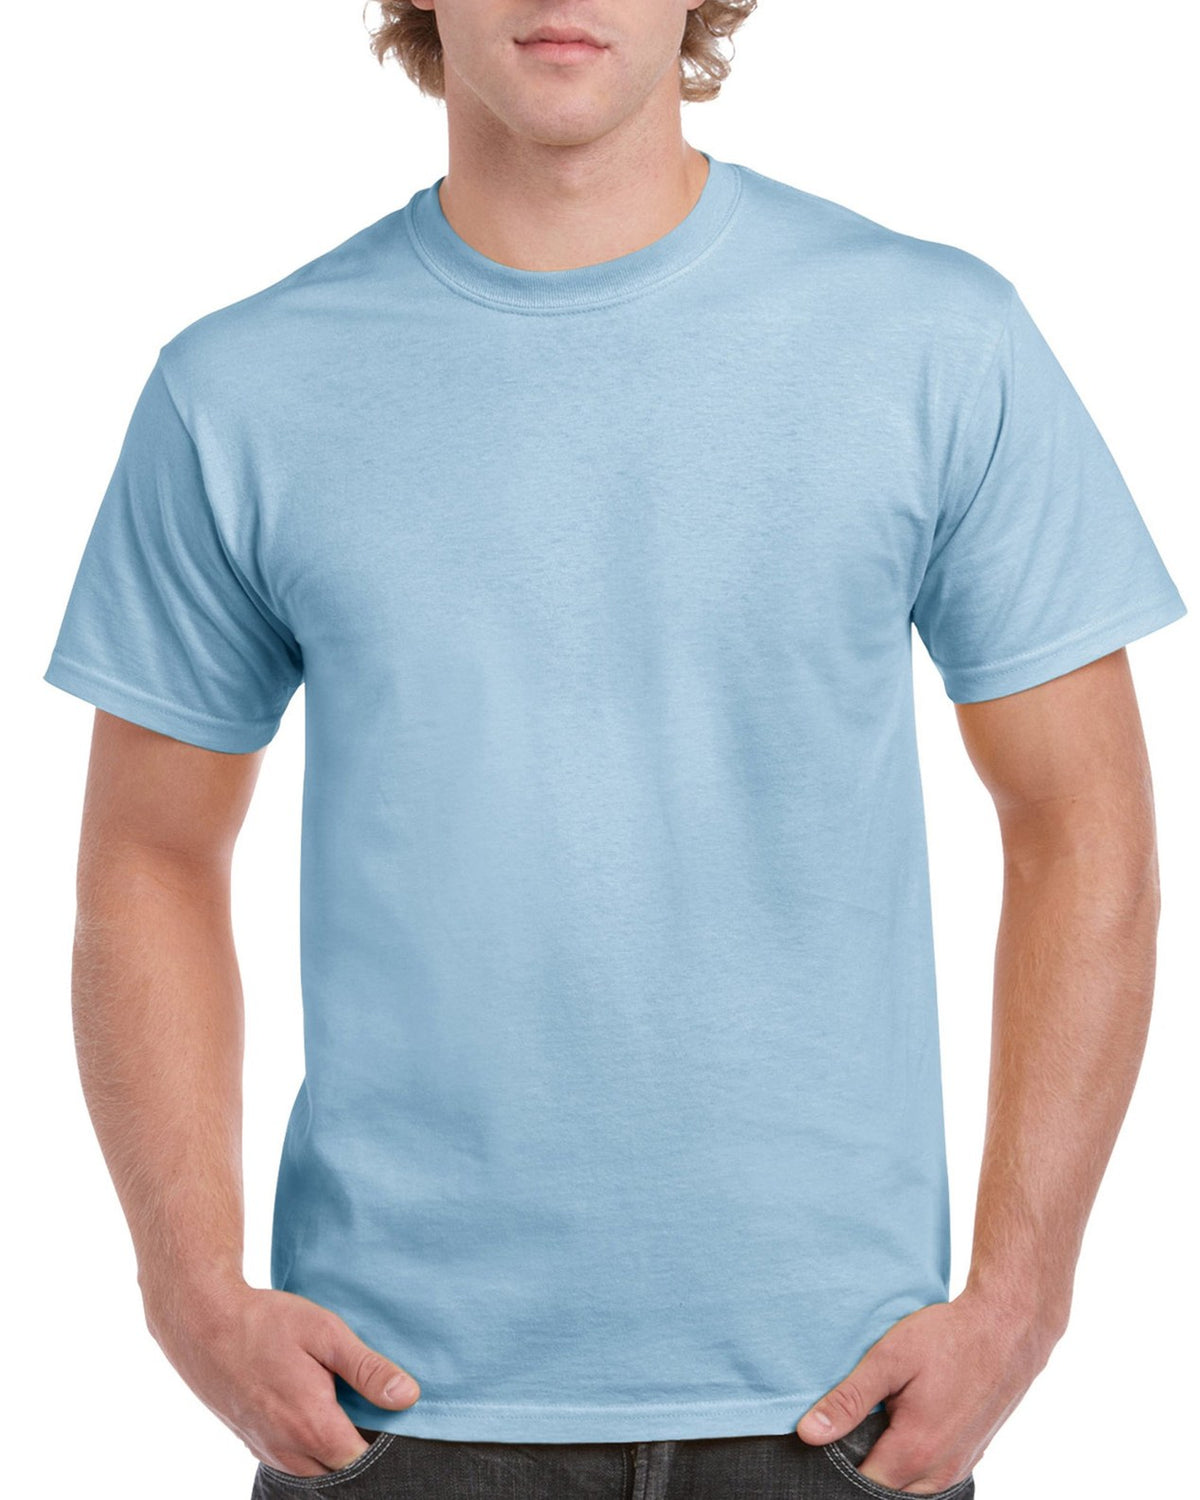 Gildan 5000 Heavy Cotton T-Shirt 1st Quality 5.3 oz S-M-L-XL – Aviva  Wholesale